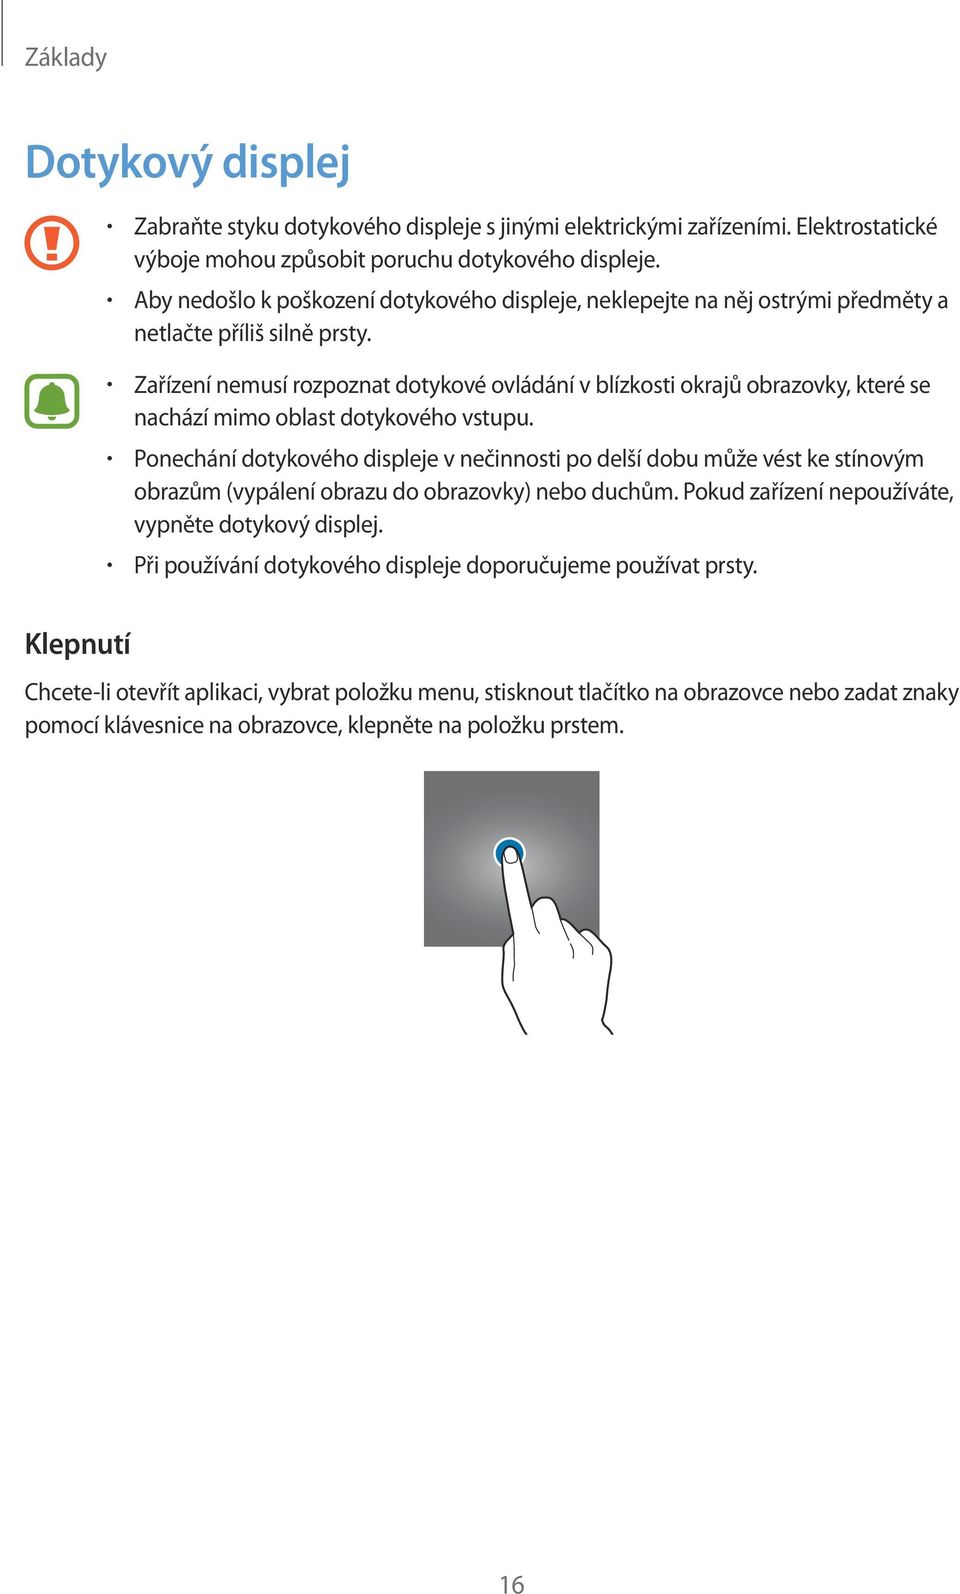 Zařízení nemusí rozpoznat dotykové ovládání v blízkosti okrajů obrazovky, které se nachází mimo oblast dotykového vstupu.